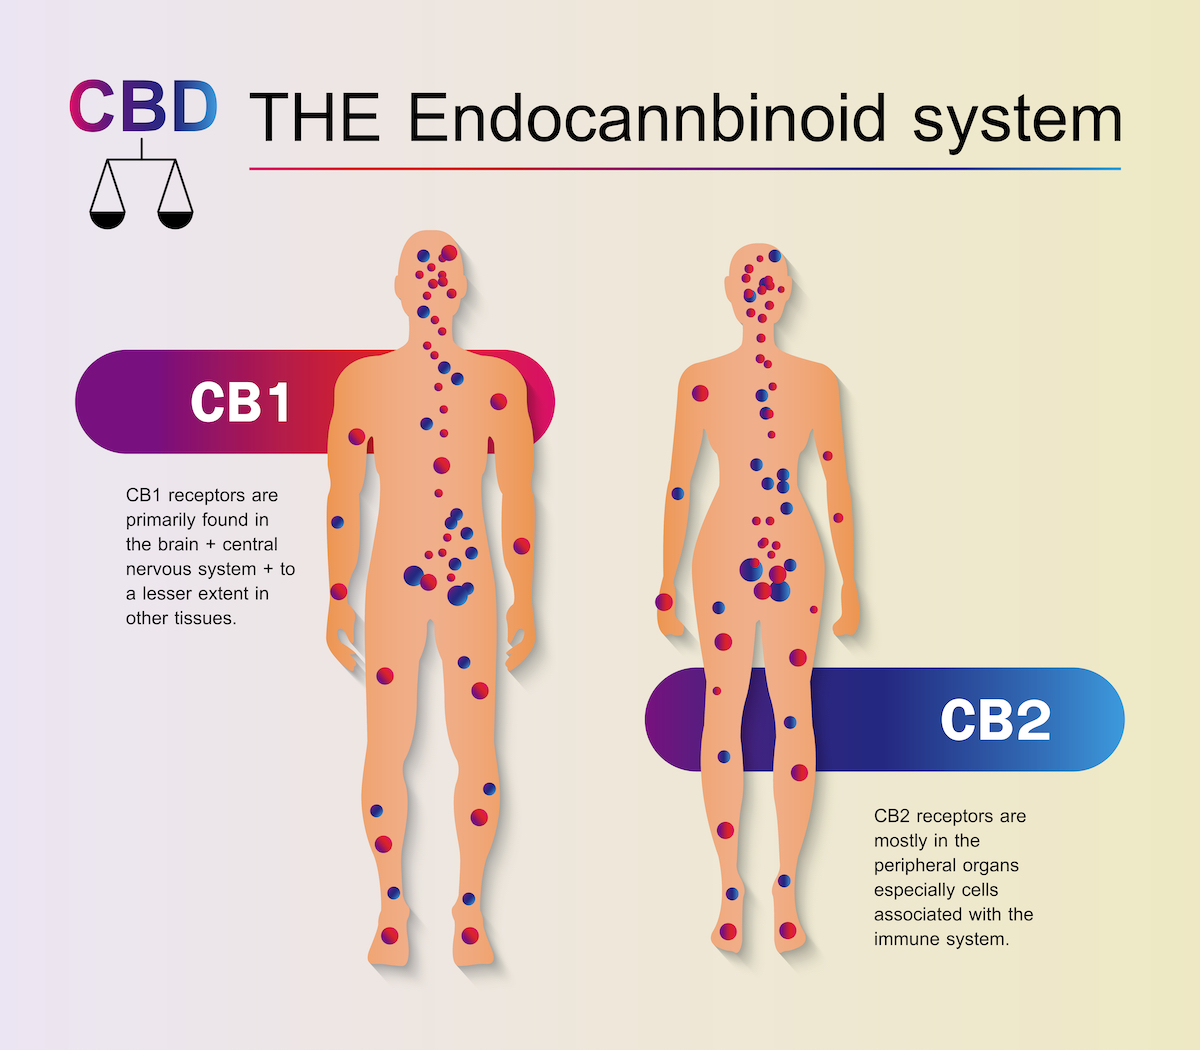 La anandamida y su relación con el THC y el CBD - RQS Blog